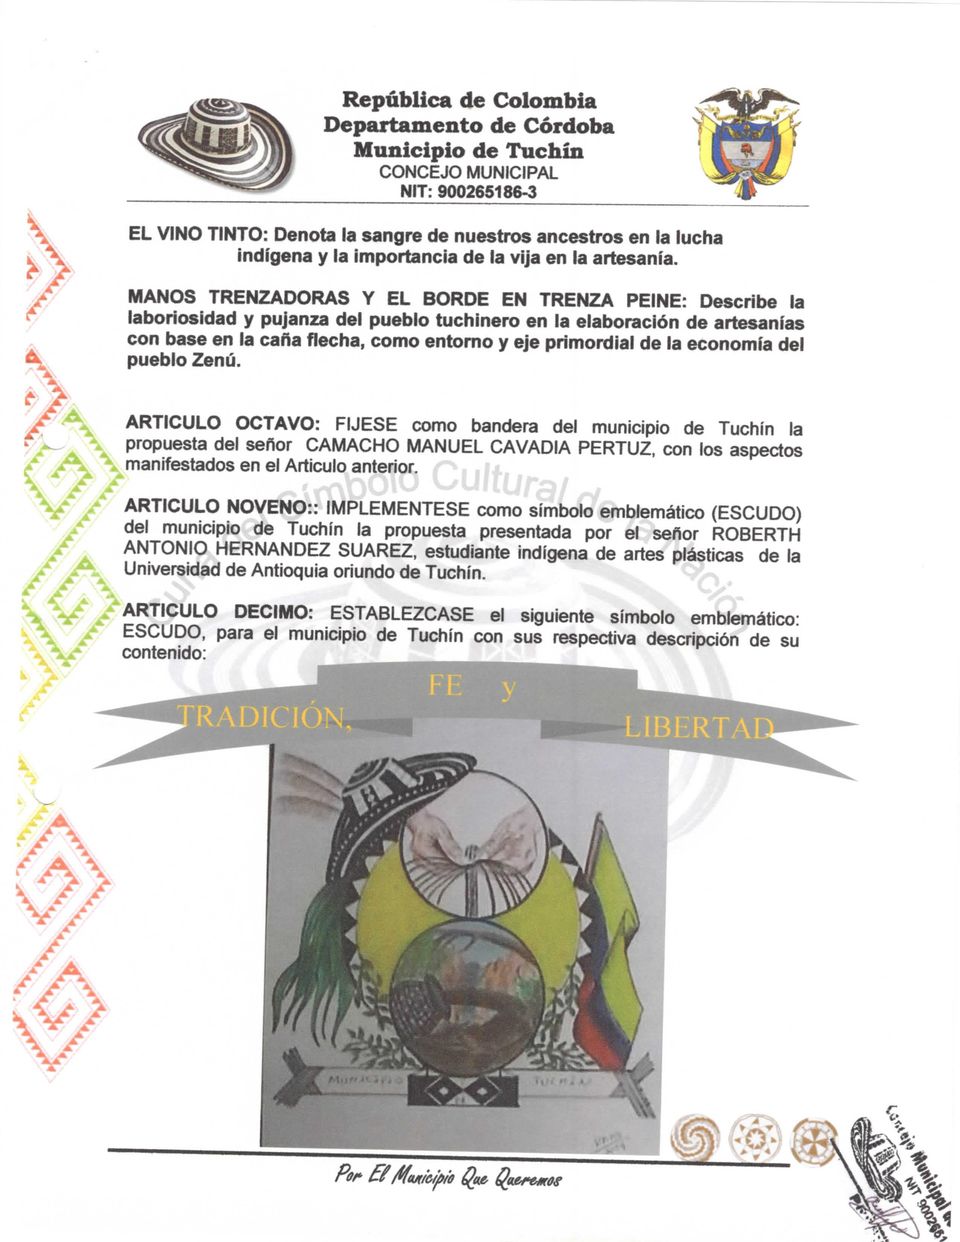 economía del pueblo Zenú. ARTICULO OCTAVO: FUESE como bandera del municipio de Tuchín la propuesta del señor CAMACHO MANUEL CAVADIA PERTUZ, con los aspectos manifestados en el Articulo anterior.